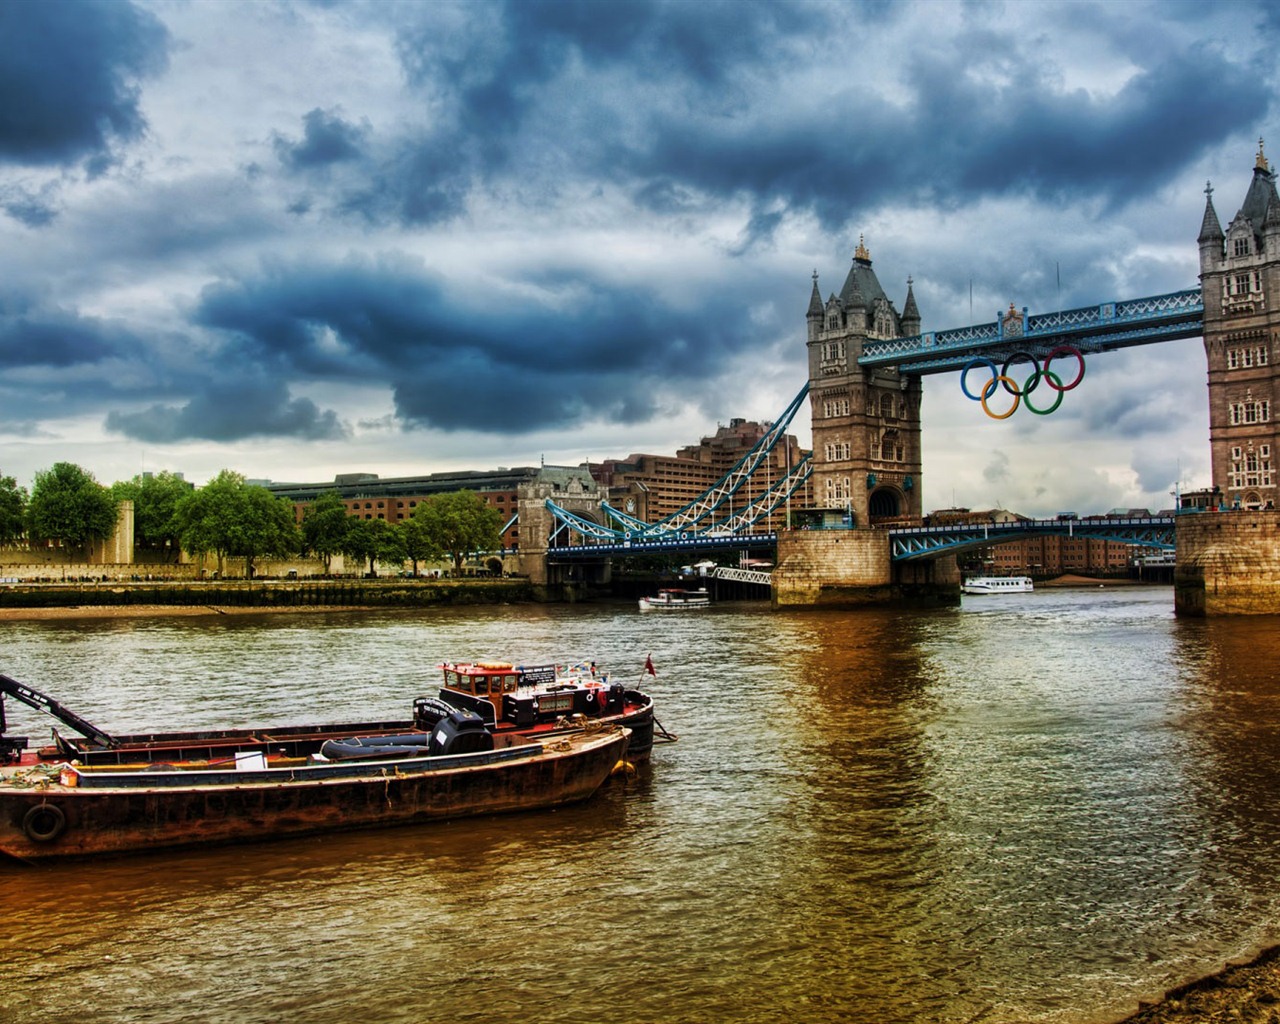 Londres 2012 Olimpiadas fondos temáticos (1) #26 - 1280x1024